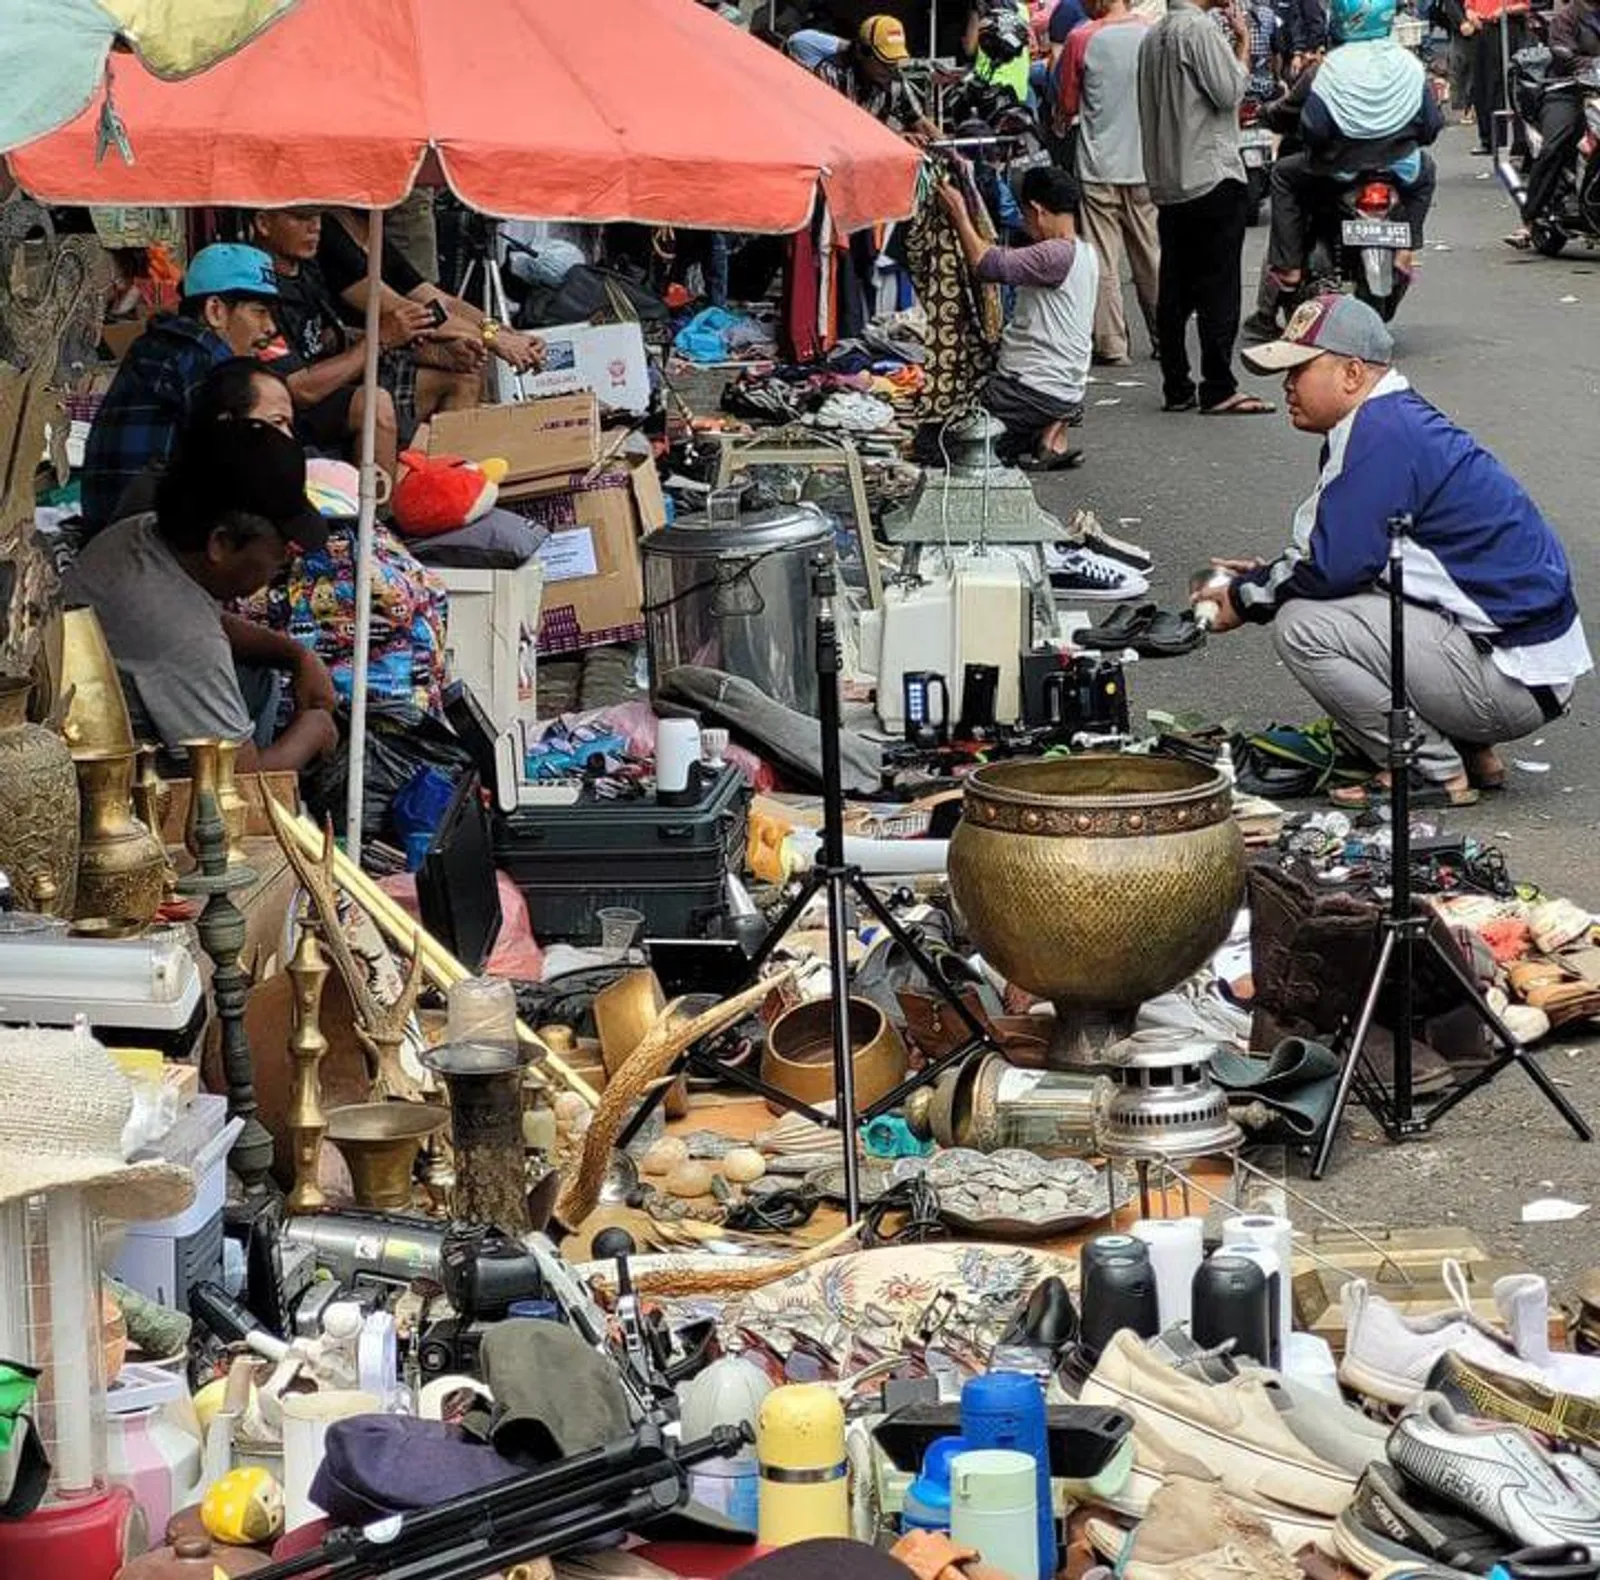 8 Wisata Pasar Lawas di Jakarta, Surganya Barang Antik!